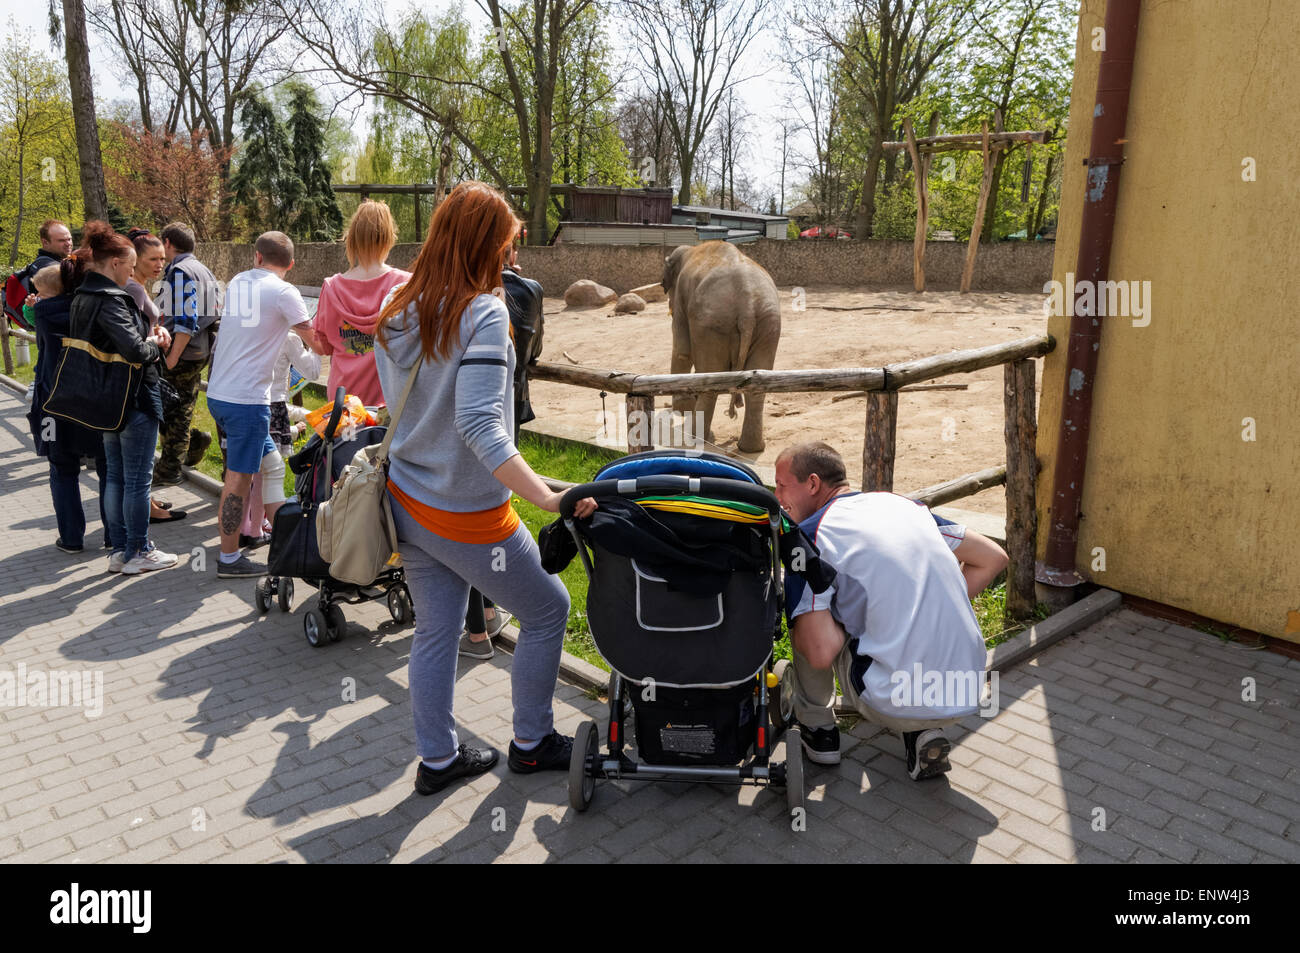 Les visiteurs à la recherche d'éléphants au zoo, Plock Pologne Banque D'Images